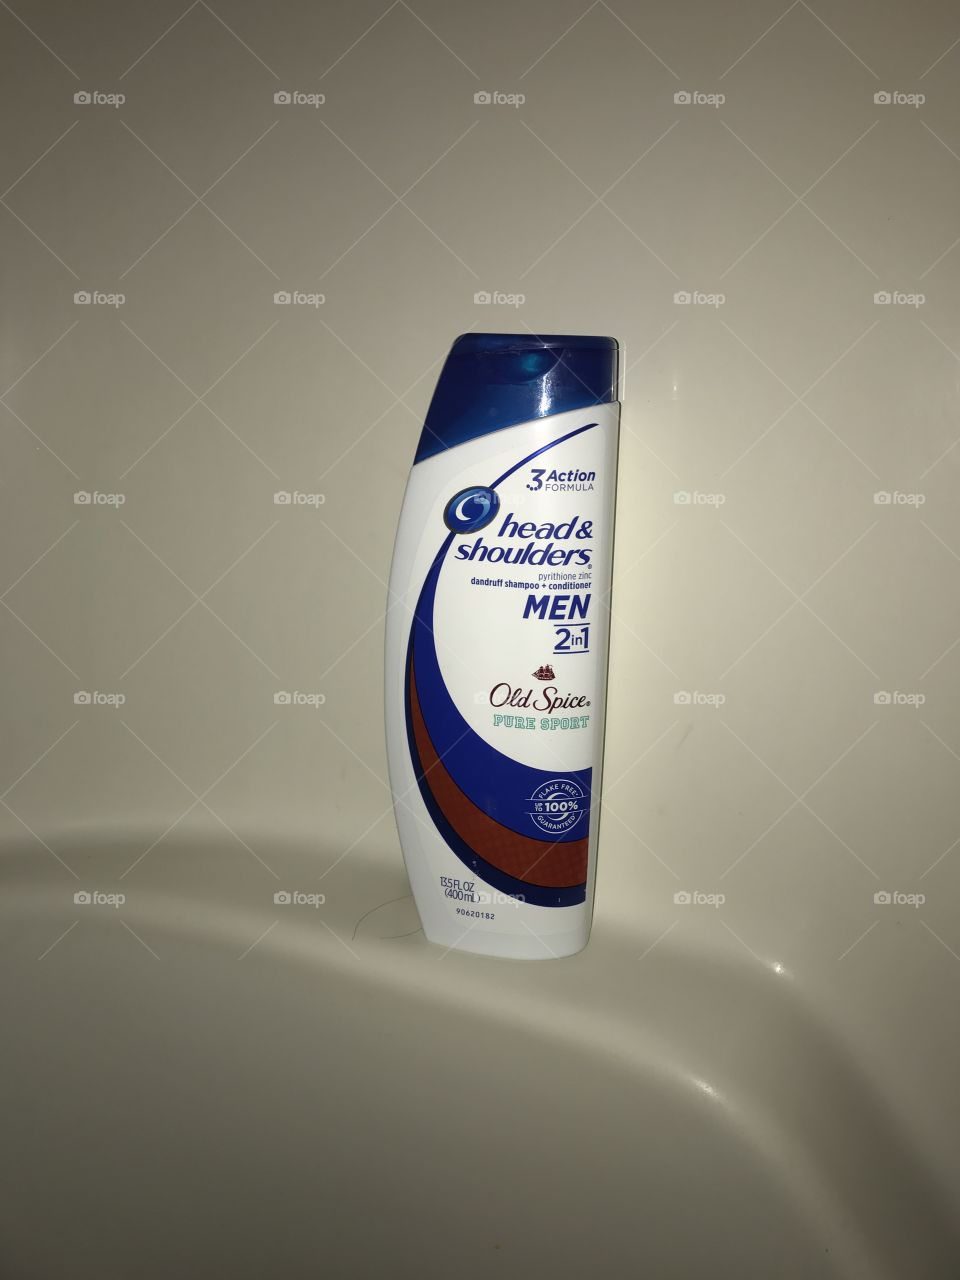 #shampoo
